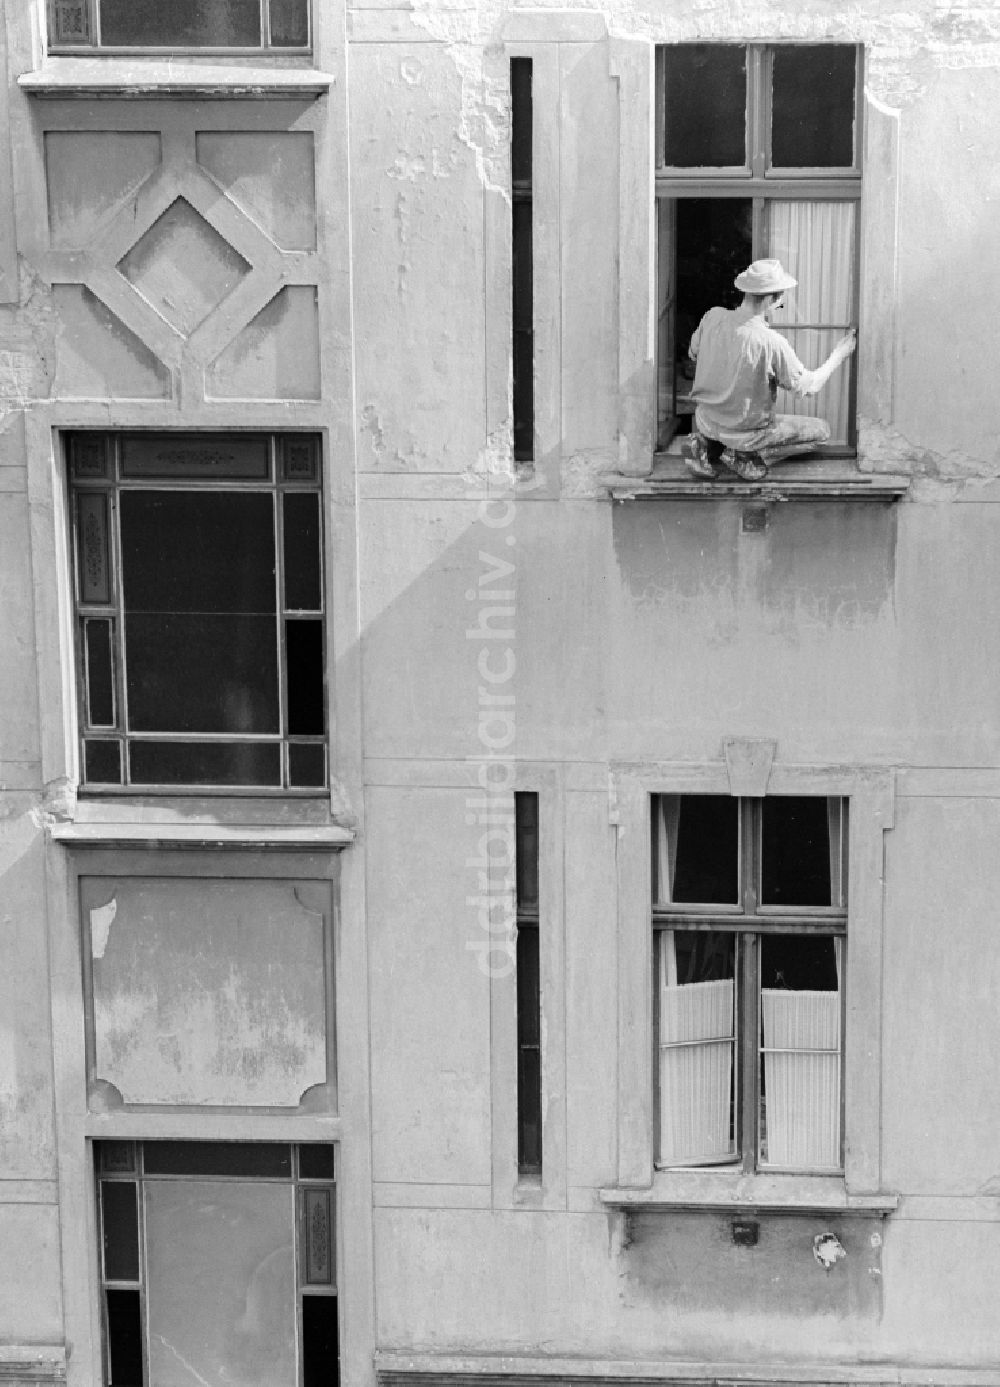 Berlin: Maler streicht Fenster in einem Hinterhof in Berlin, der ehemaligen Hauptstadt der DDR, Deutsche Demokratische Republik